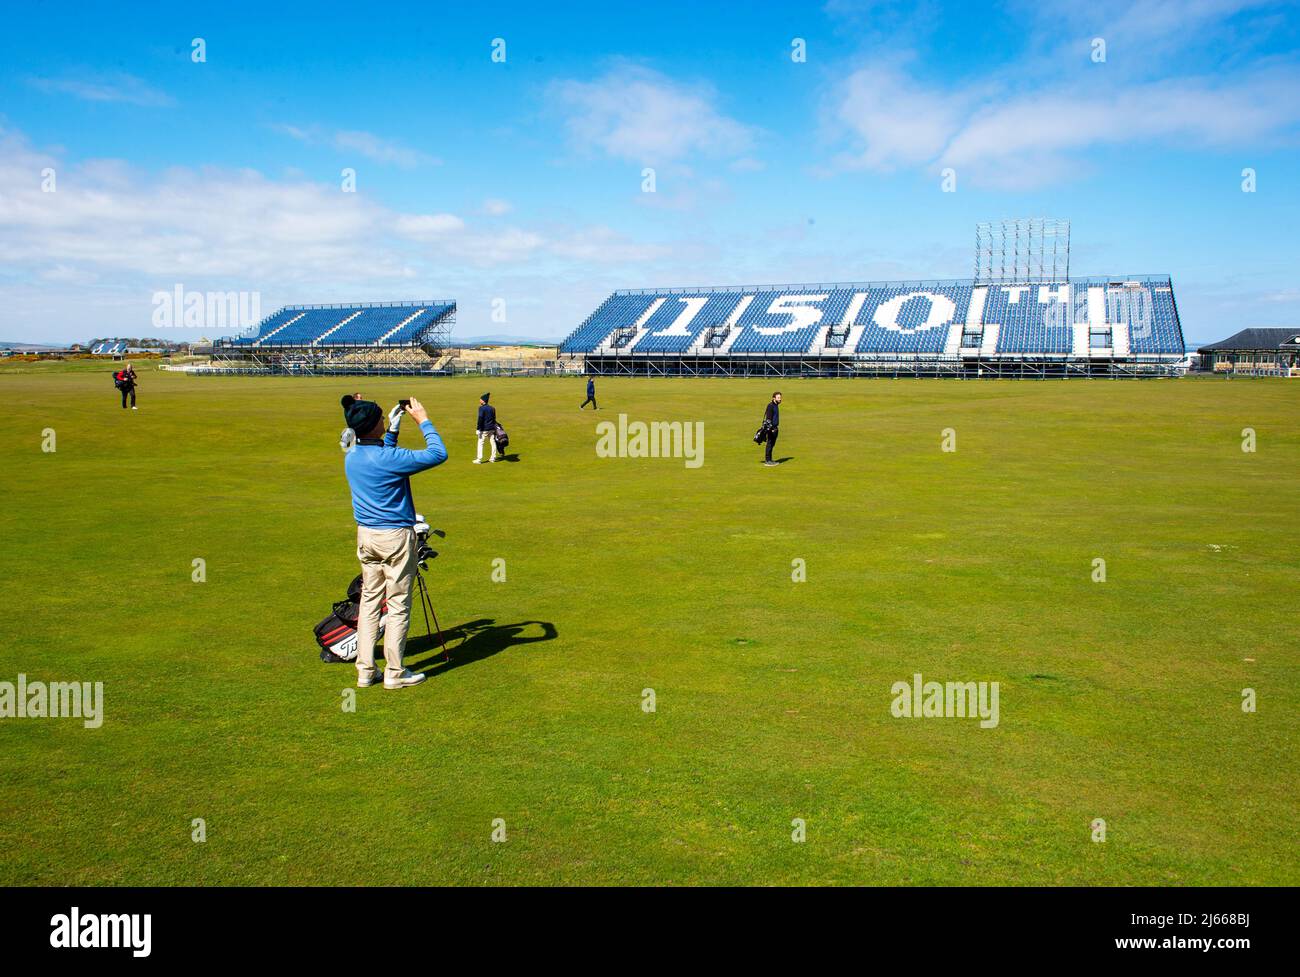 Stands temporaires surplombant le fairway 1st et 18th de l'ancien parcours, qui accueillera le tournoi Open Golf 150th à St Andrews en juillet 2022. Banque D'Images